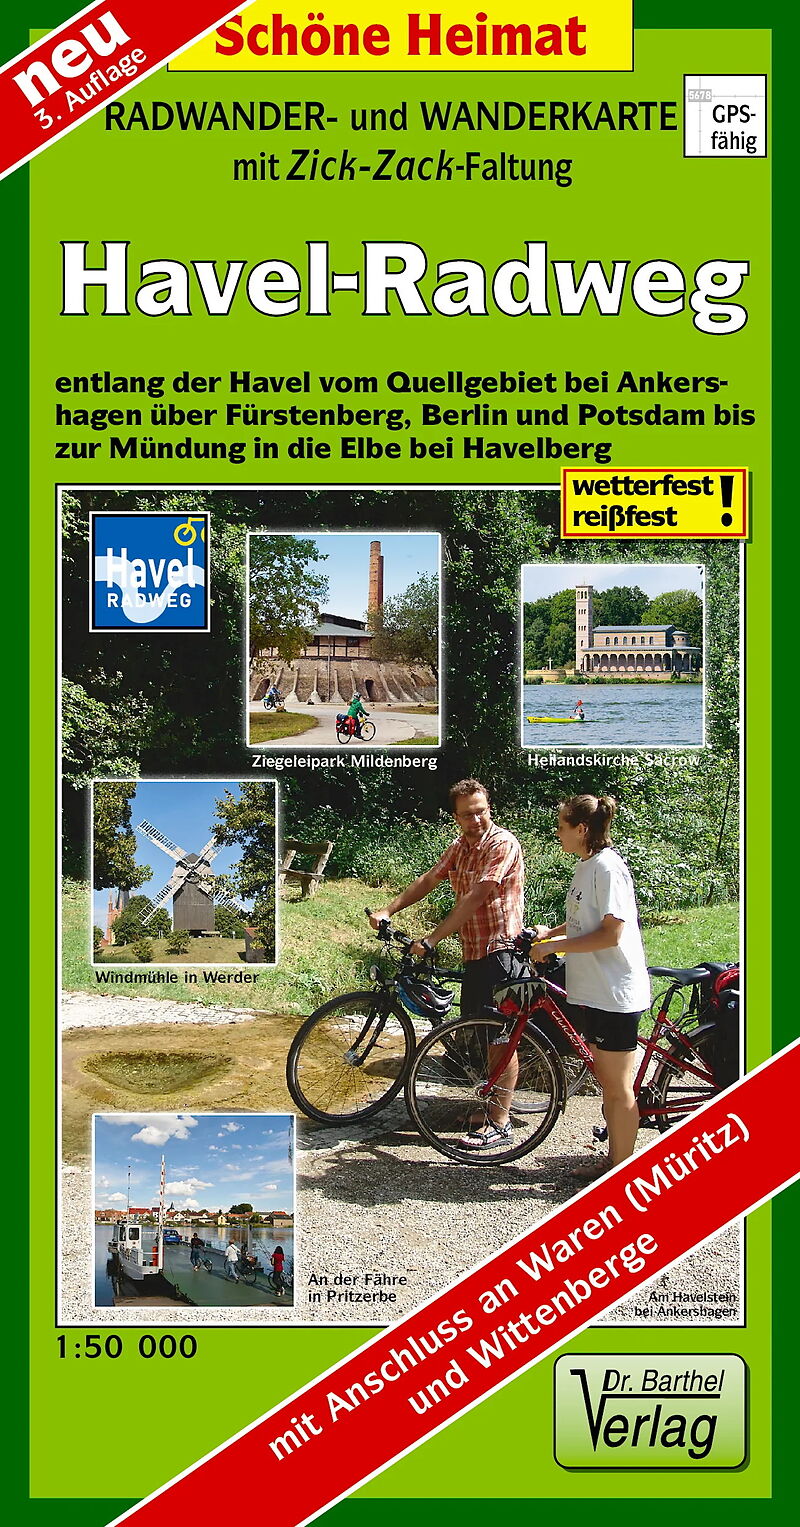 Radwander- und Wanderkarte Havel-Radweg